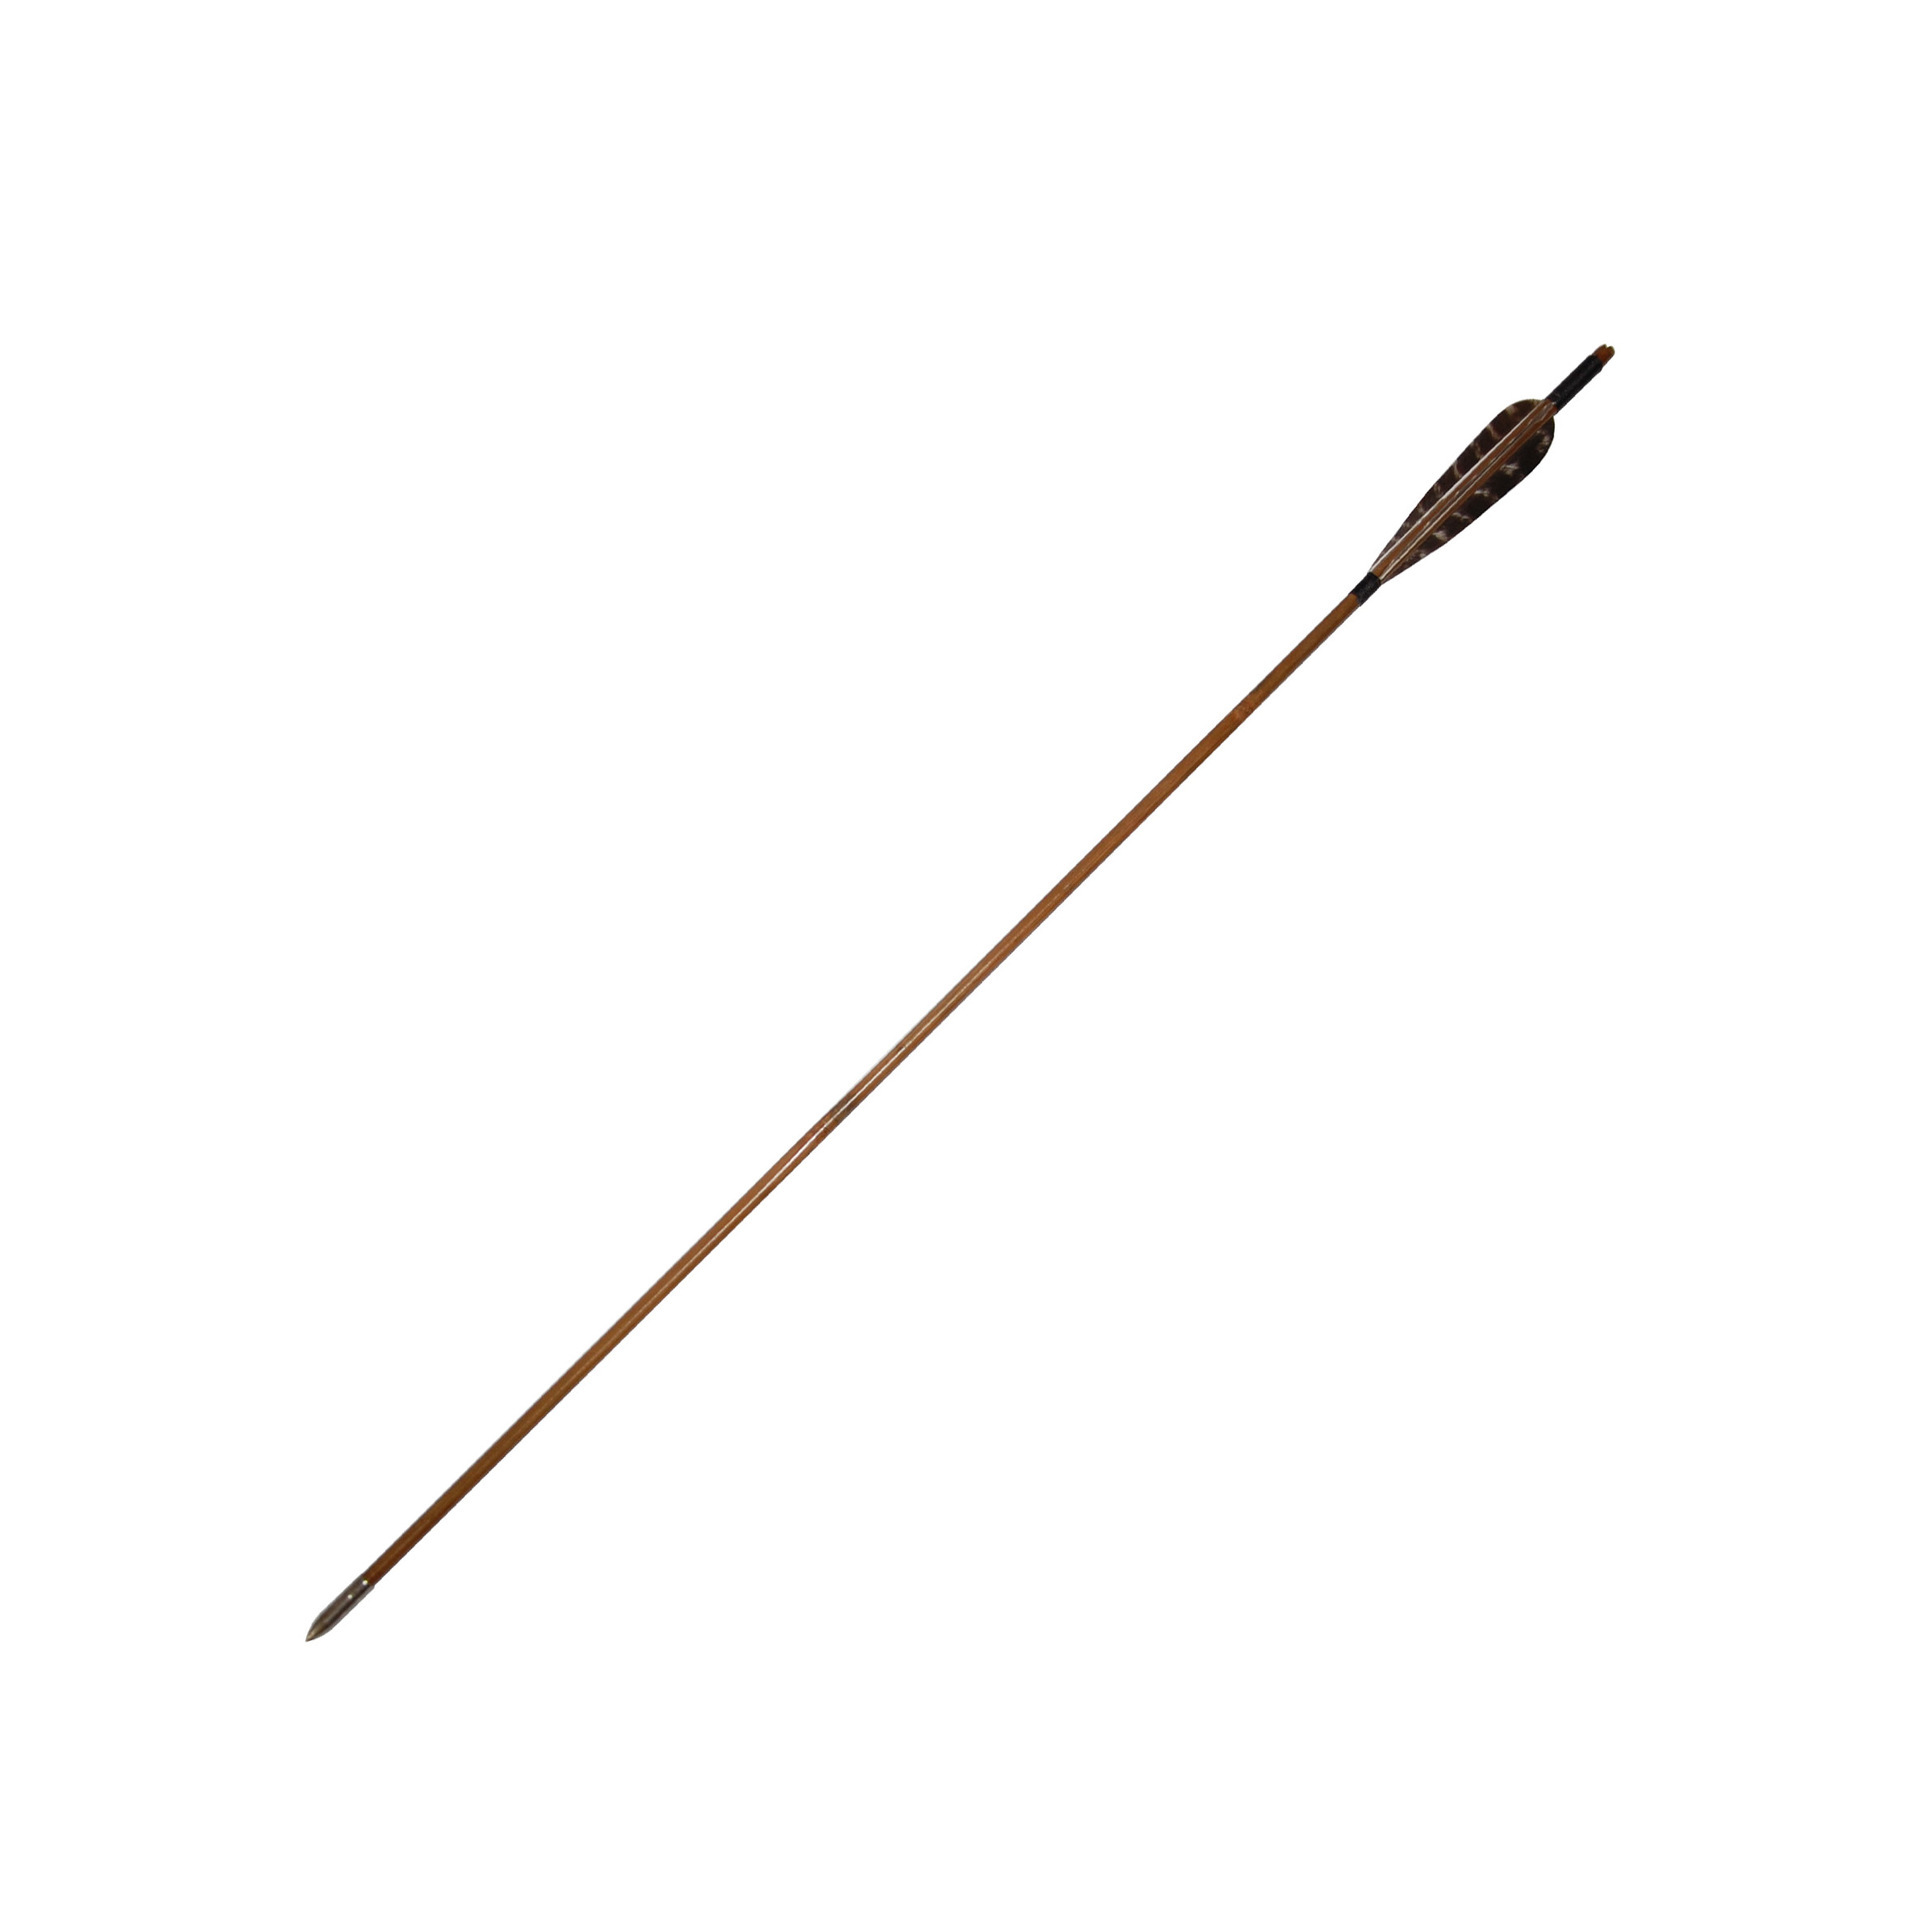 户外器材 供应射箭馆 体育比赛 竹子材质 竹箭 反曲弓